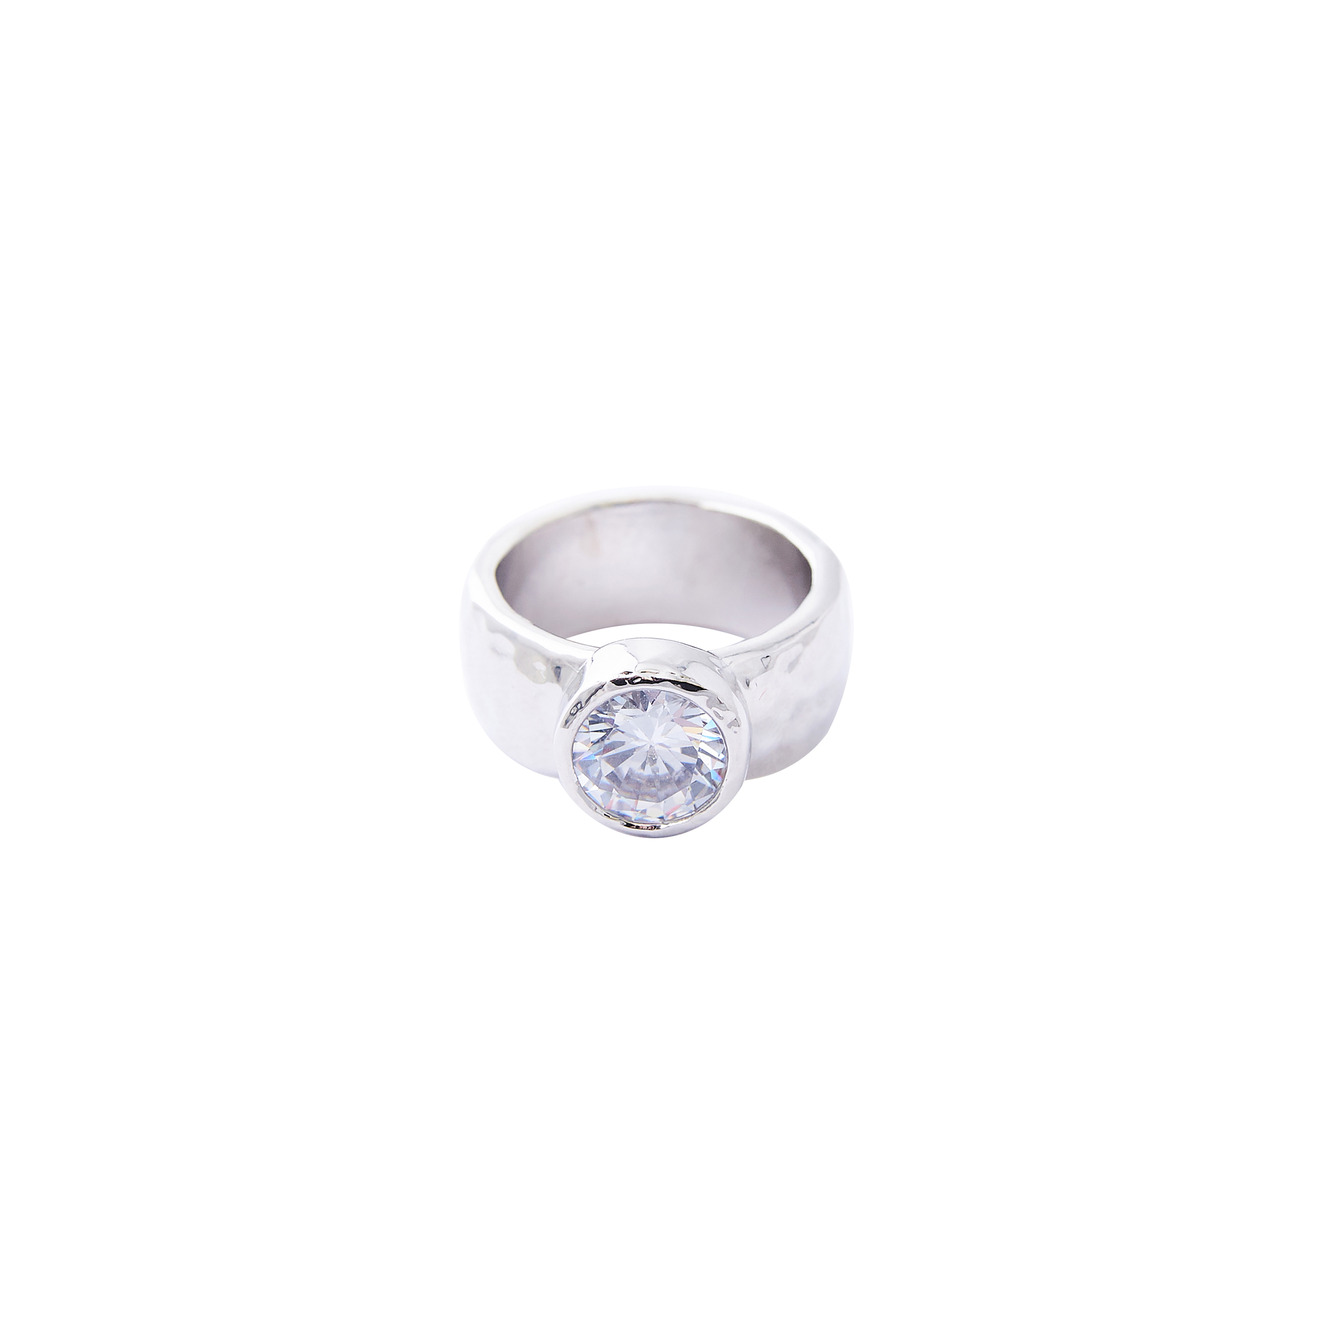 Herald Percy Серебристое высокое кольцо с крупным кристаллом herald percy красное кольцо калиграфия с кристаллом